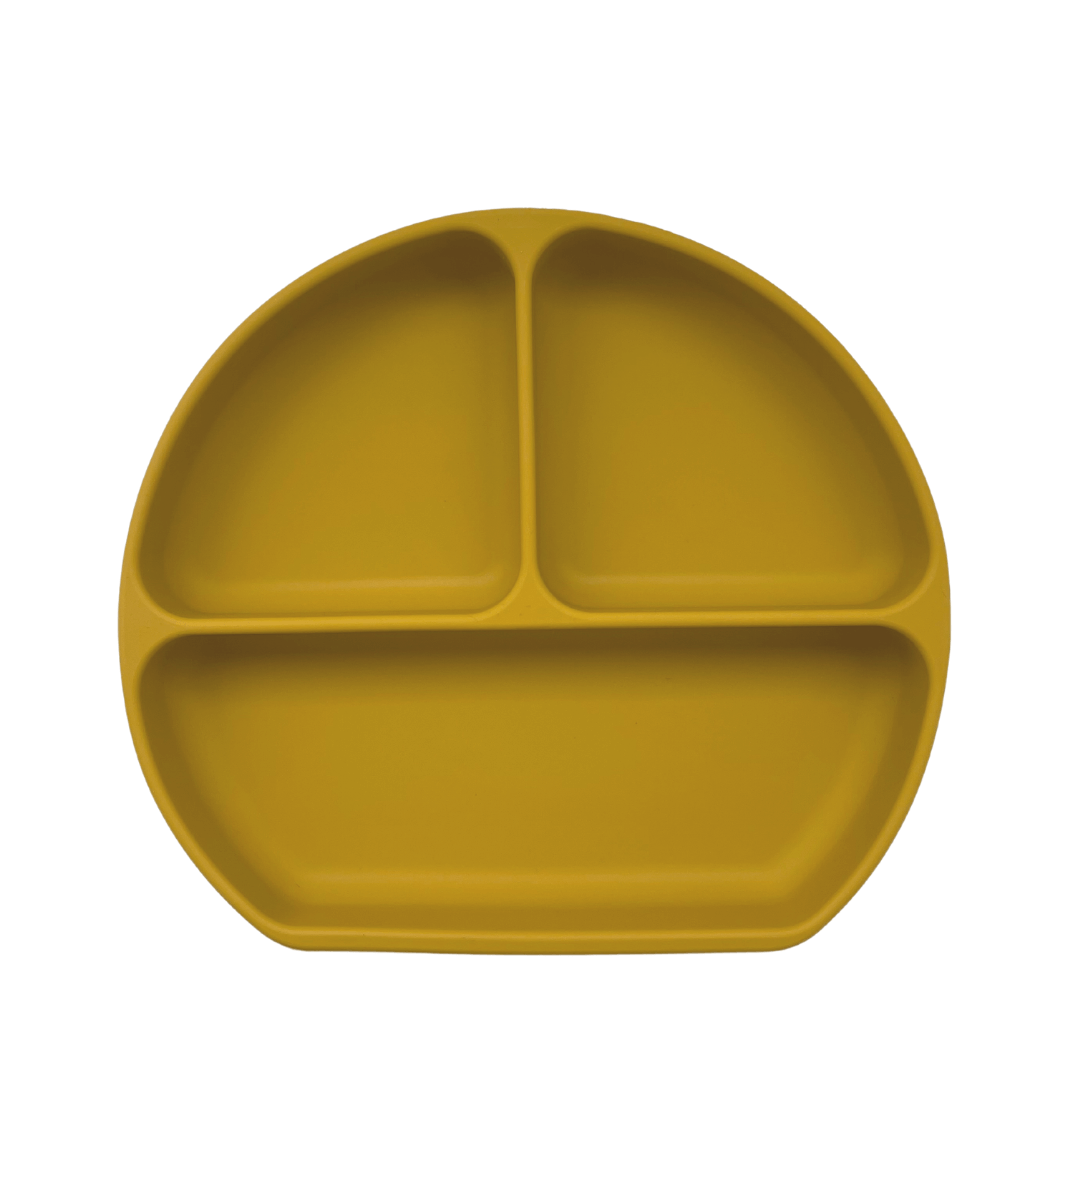 Detailweergave van de hoogwaardige, foodgrade siliconen van het Siena bordje, veilig en niet breekbaar.